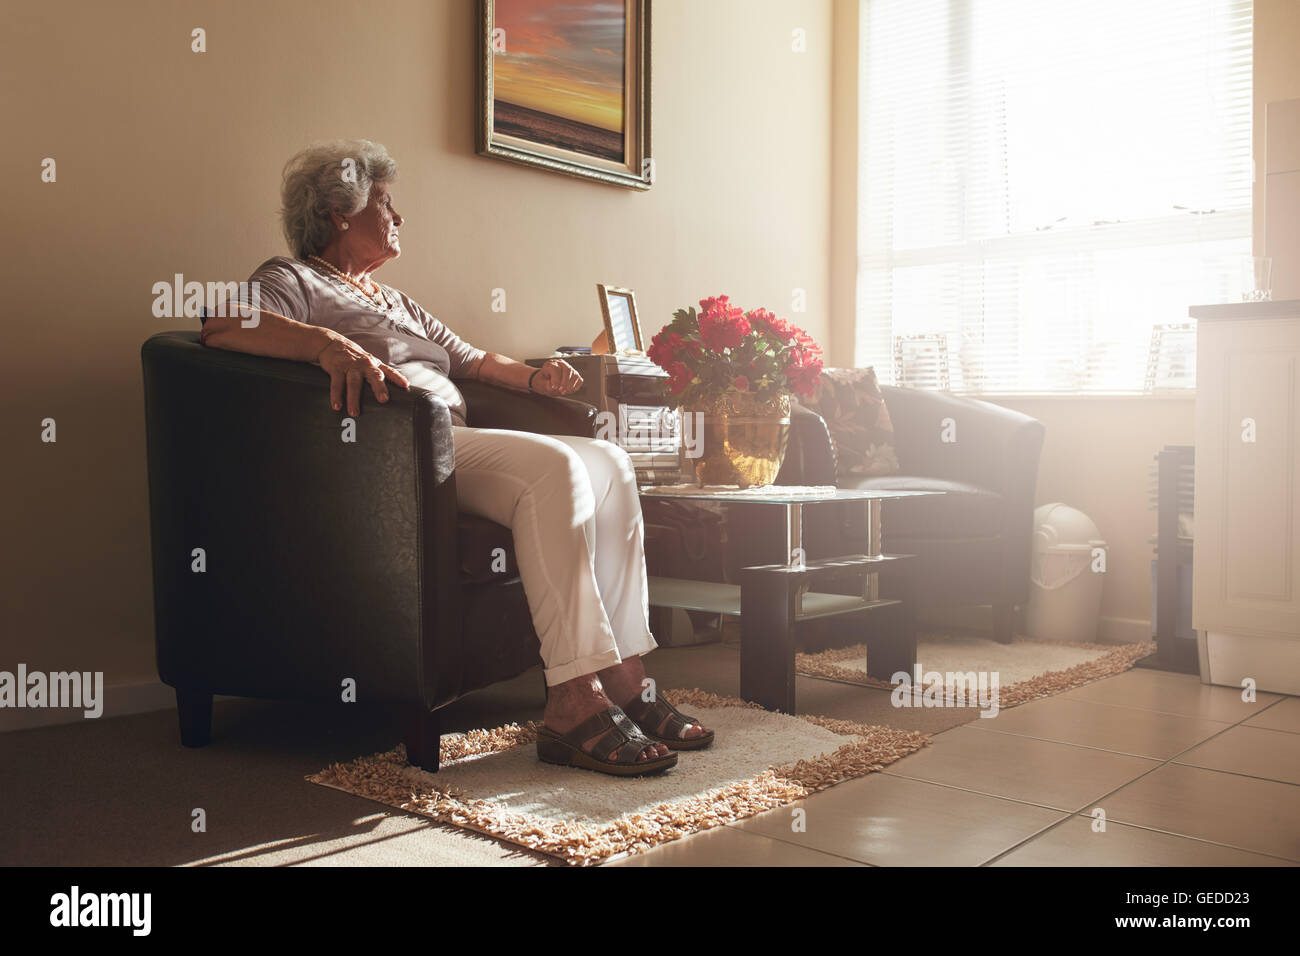 Hauts femme assise seule sur une chaise à la maison. Retired woman relaxing in living room. Banque D'Images